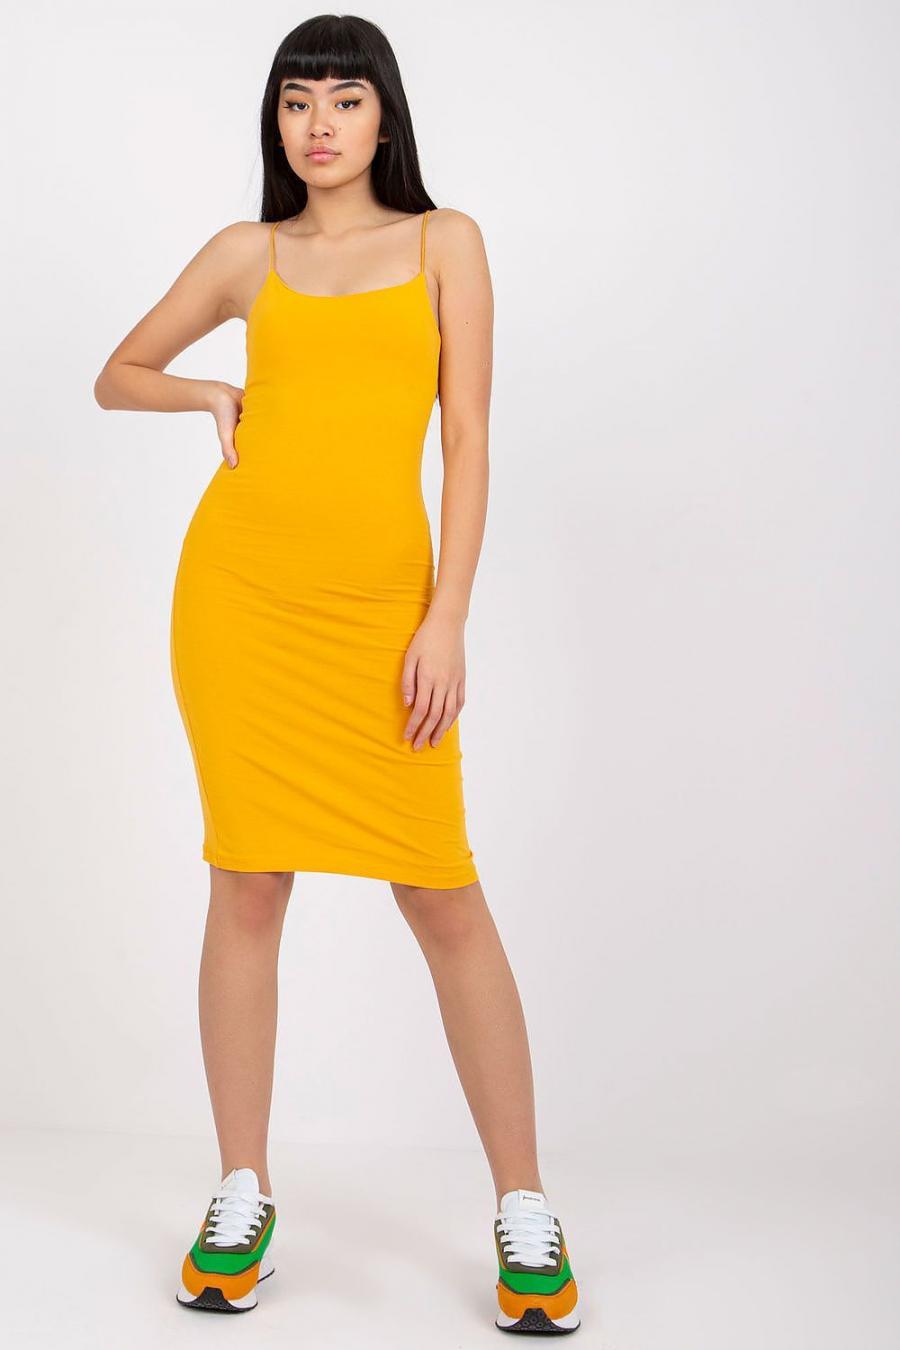 Ostatní značky šaty dámské 165153 - žlutá - velikost XS